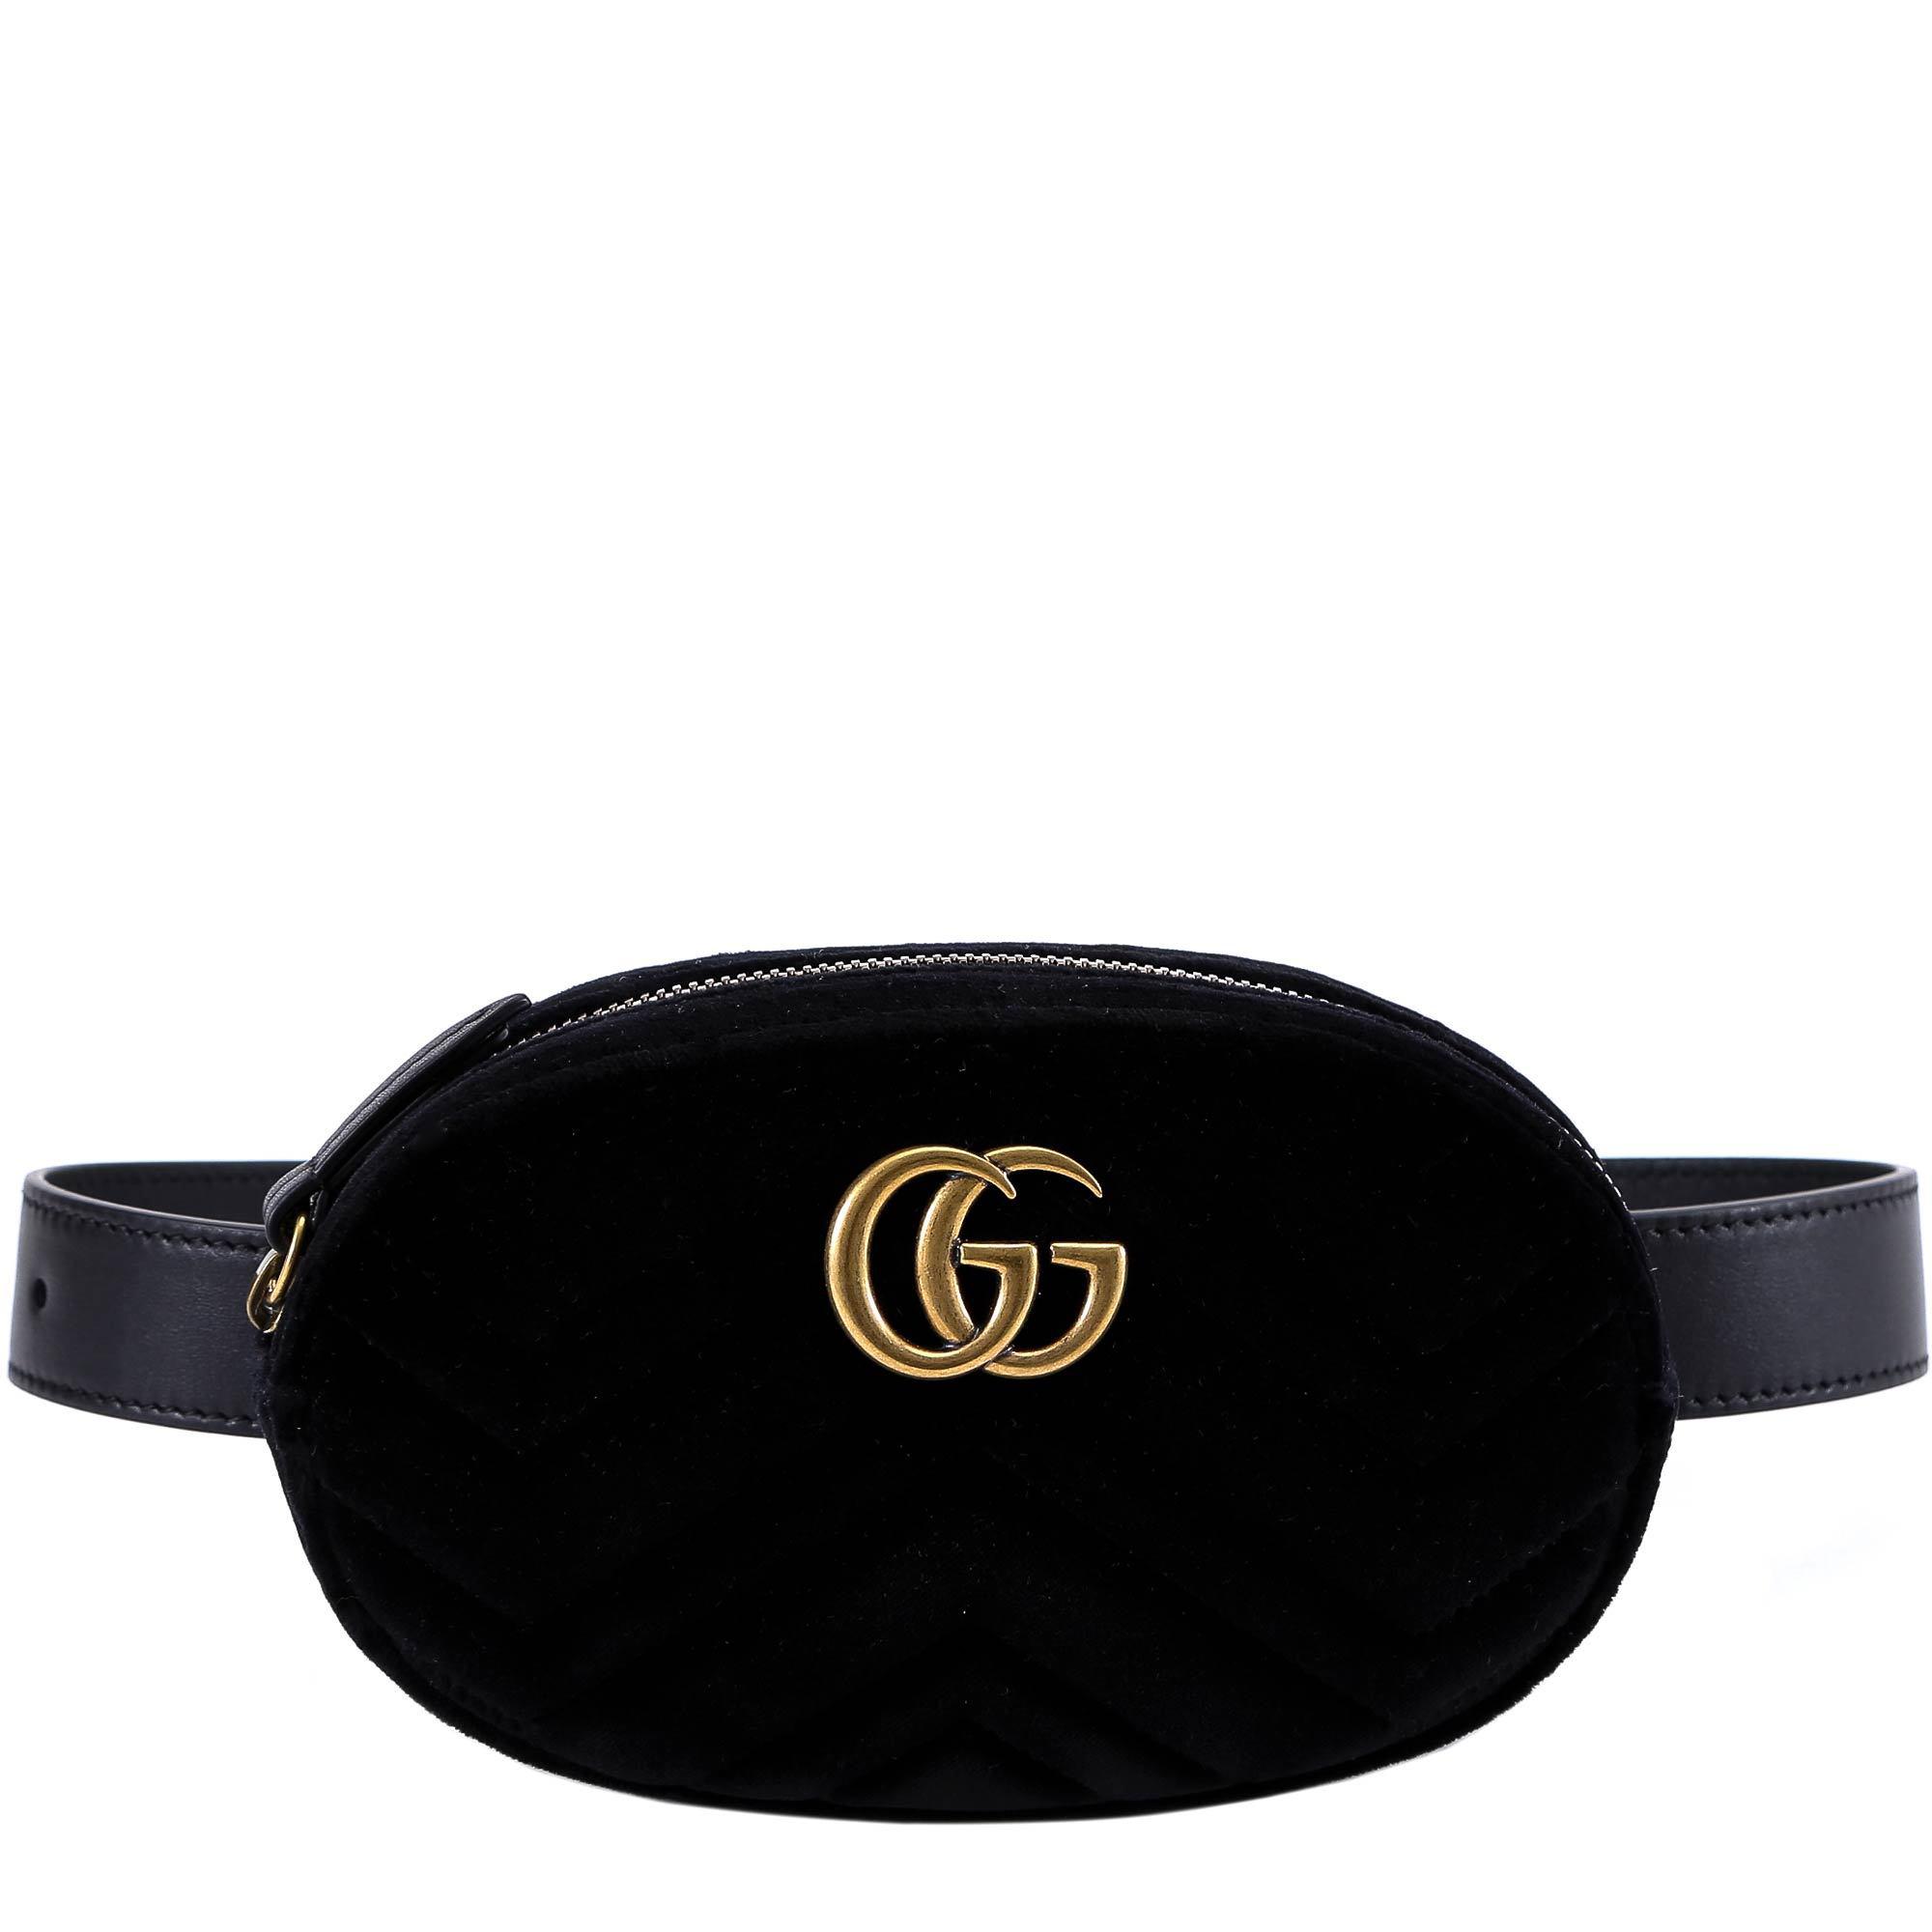 Gucci Women's GG Marmont Belt Bag - Pink - Belt Bags